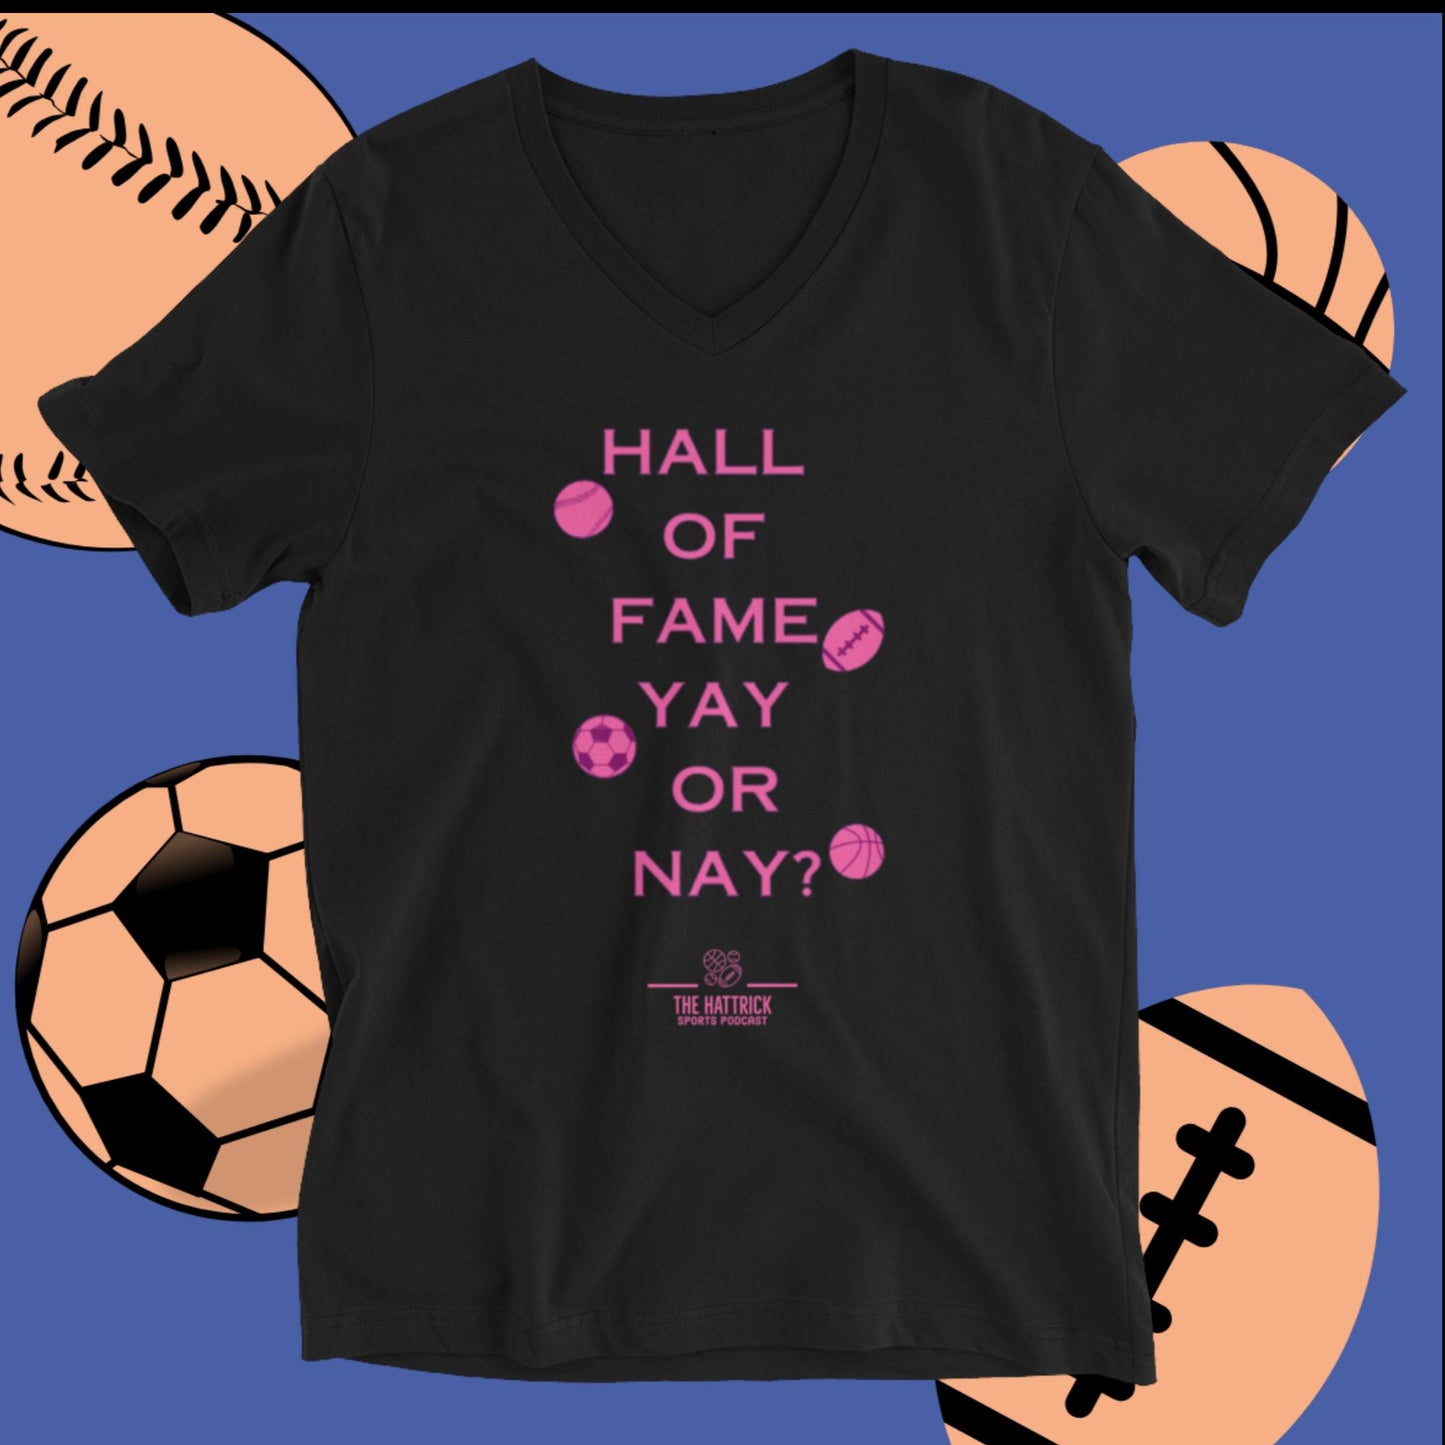 Unisex Short Sleeve V-Neck Hall of Fame Yay or Nay? T-Shirt